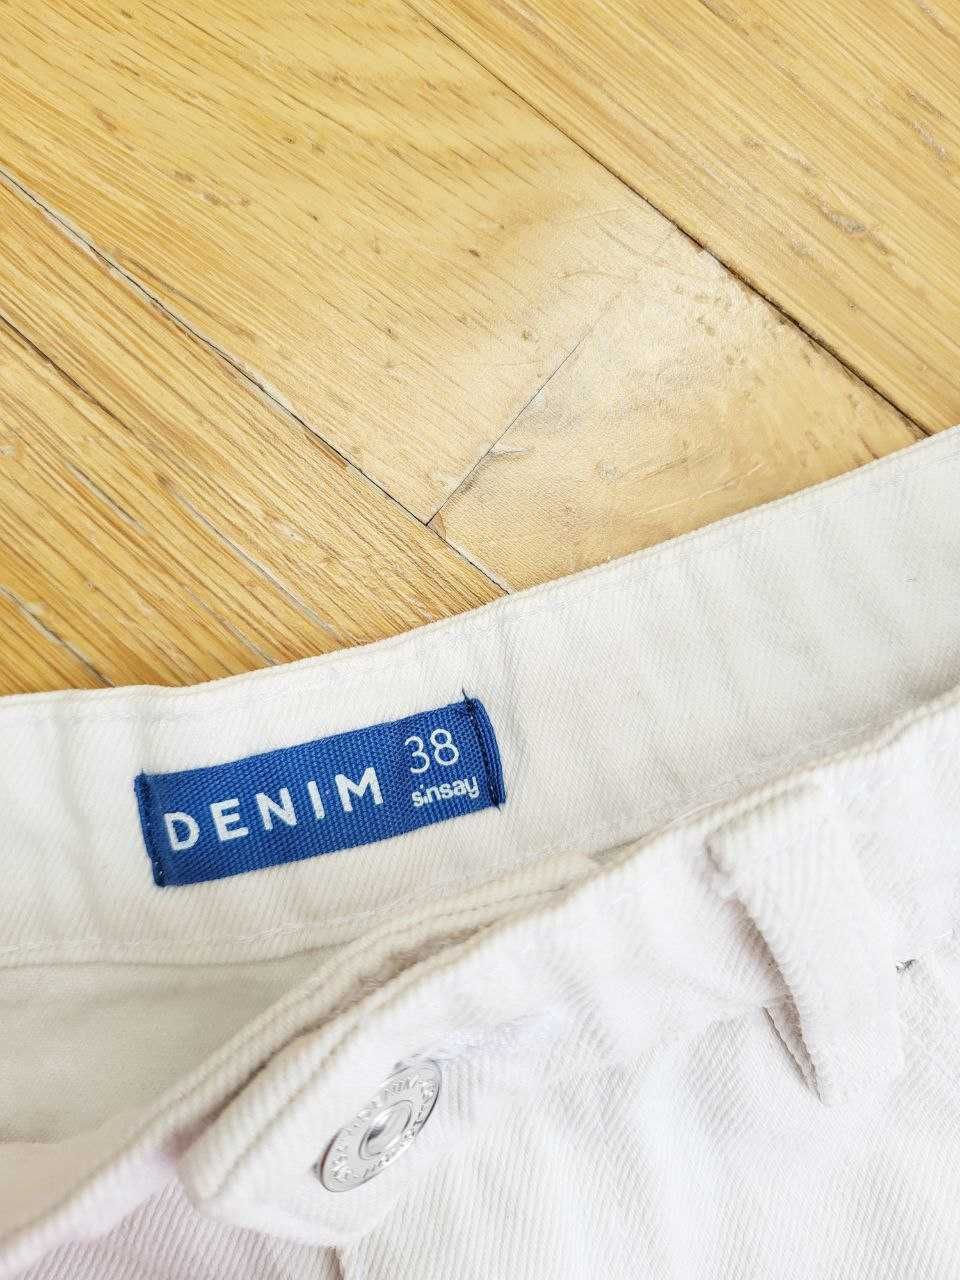 Белые короткие джинсовые шорты летние женские стильные актуальные